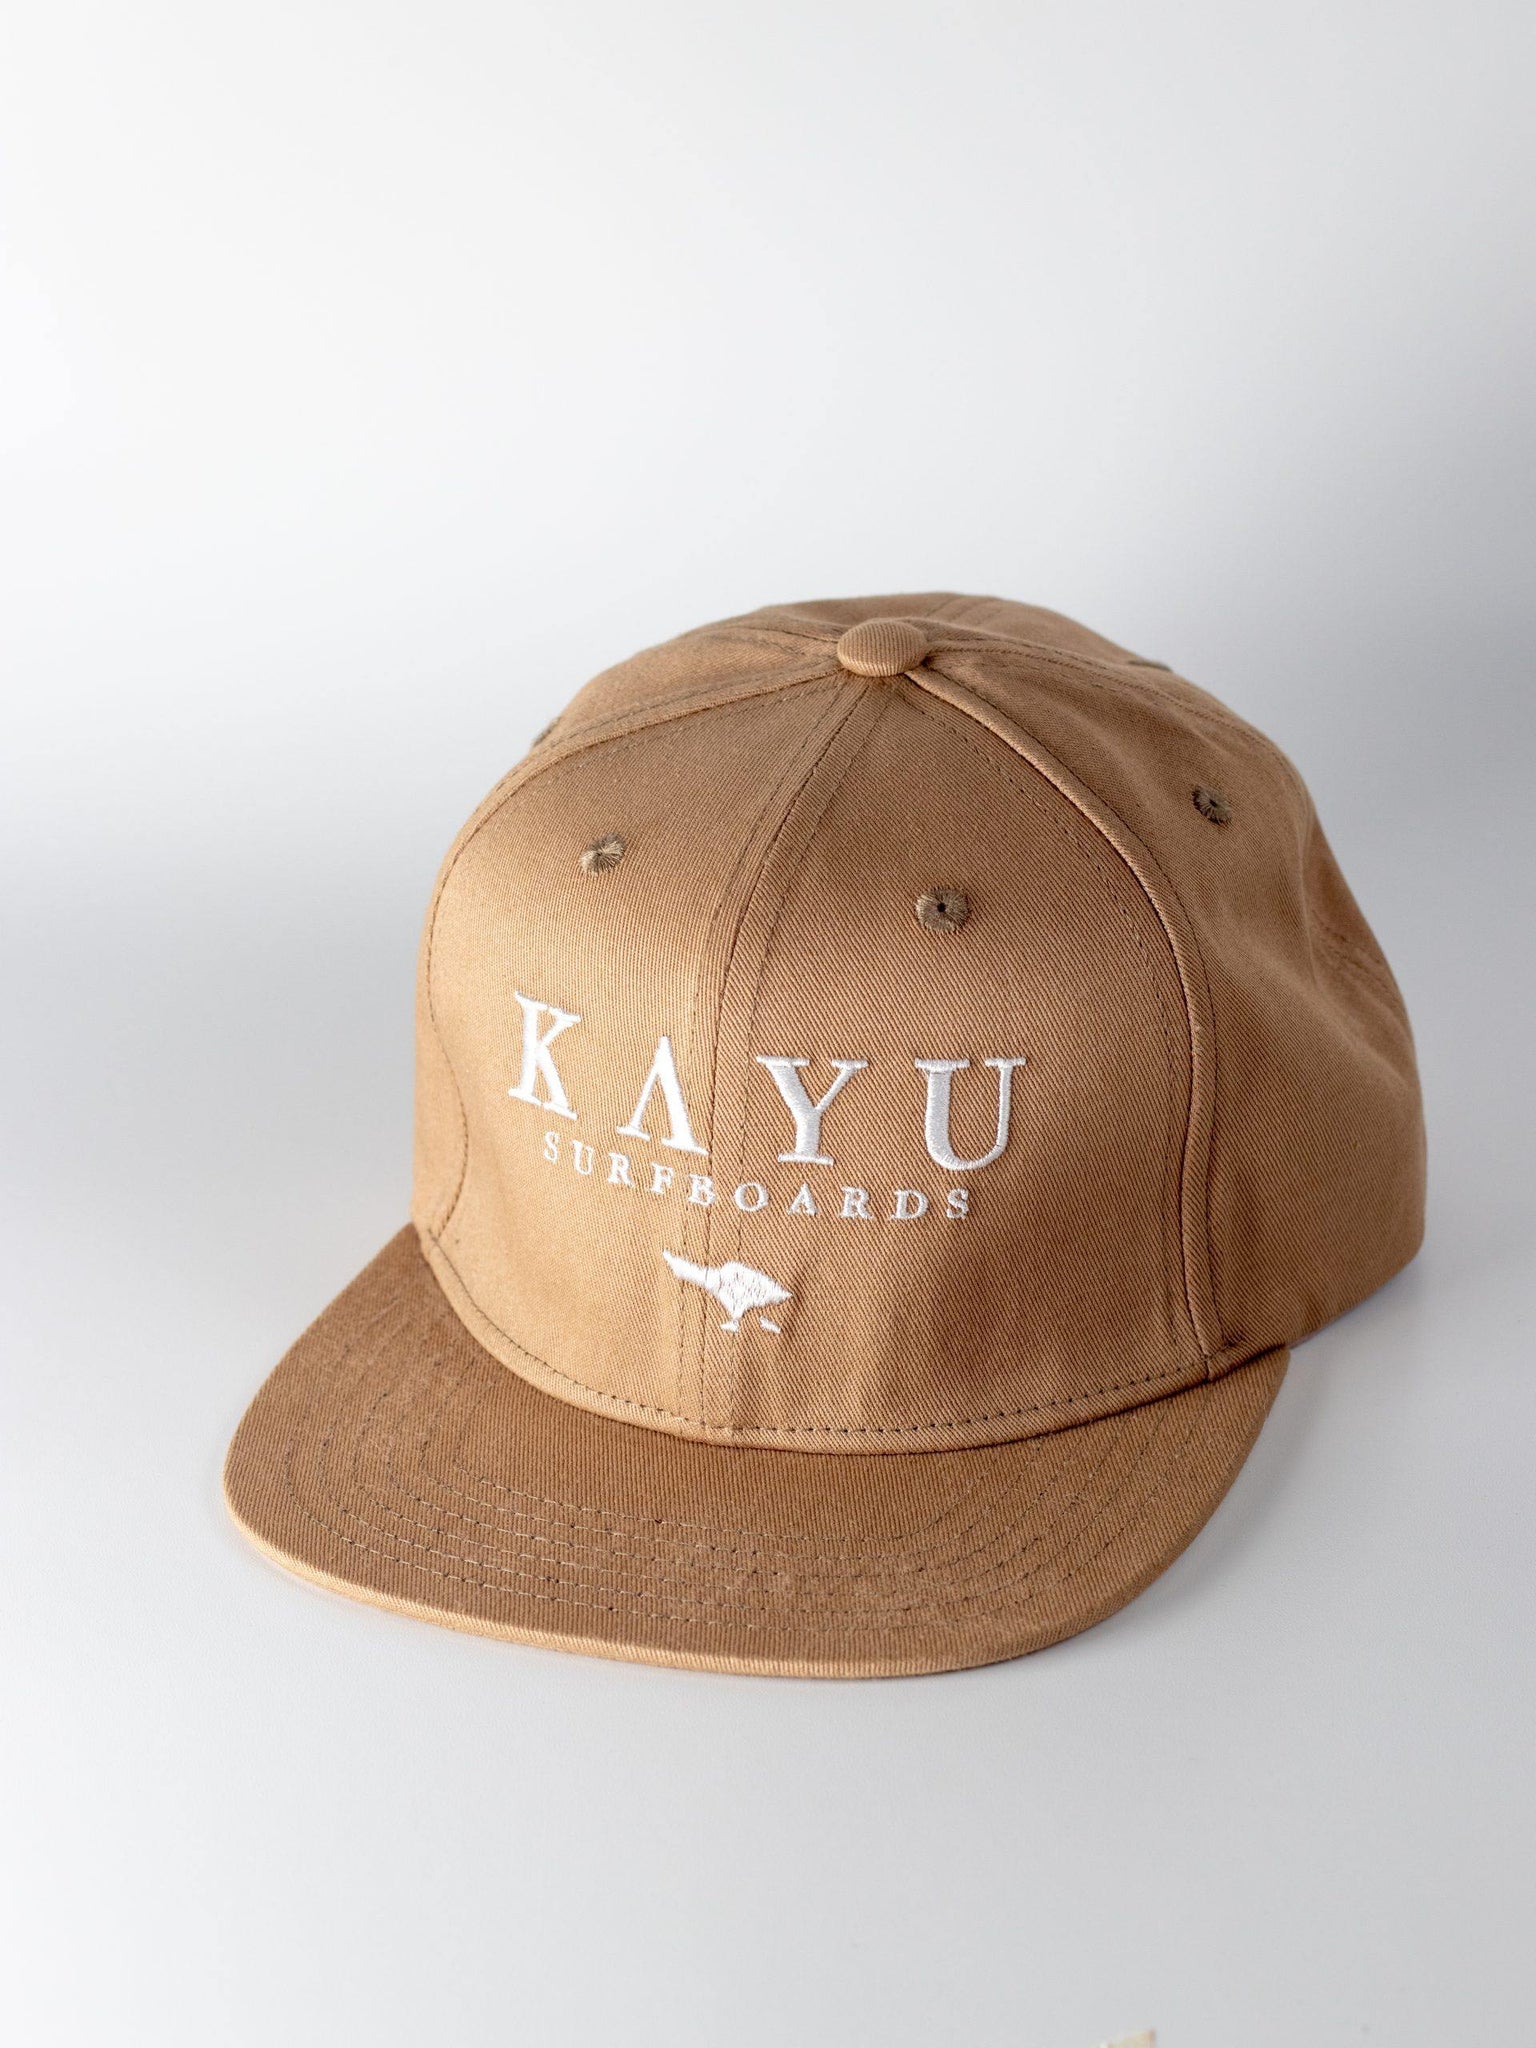 The KAYU hat - Kayu Surfboards